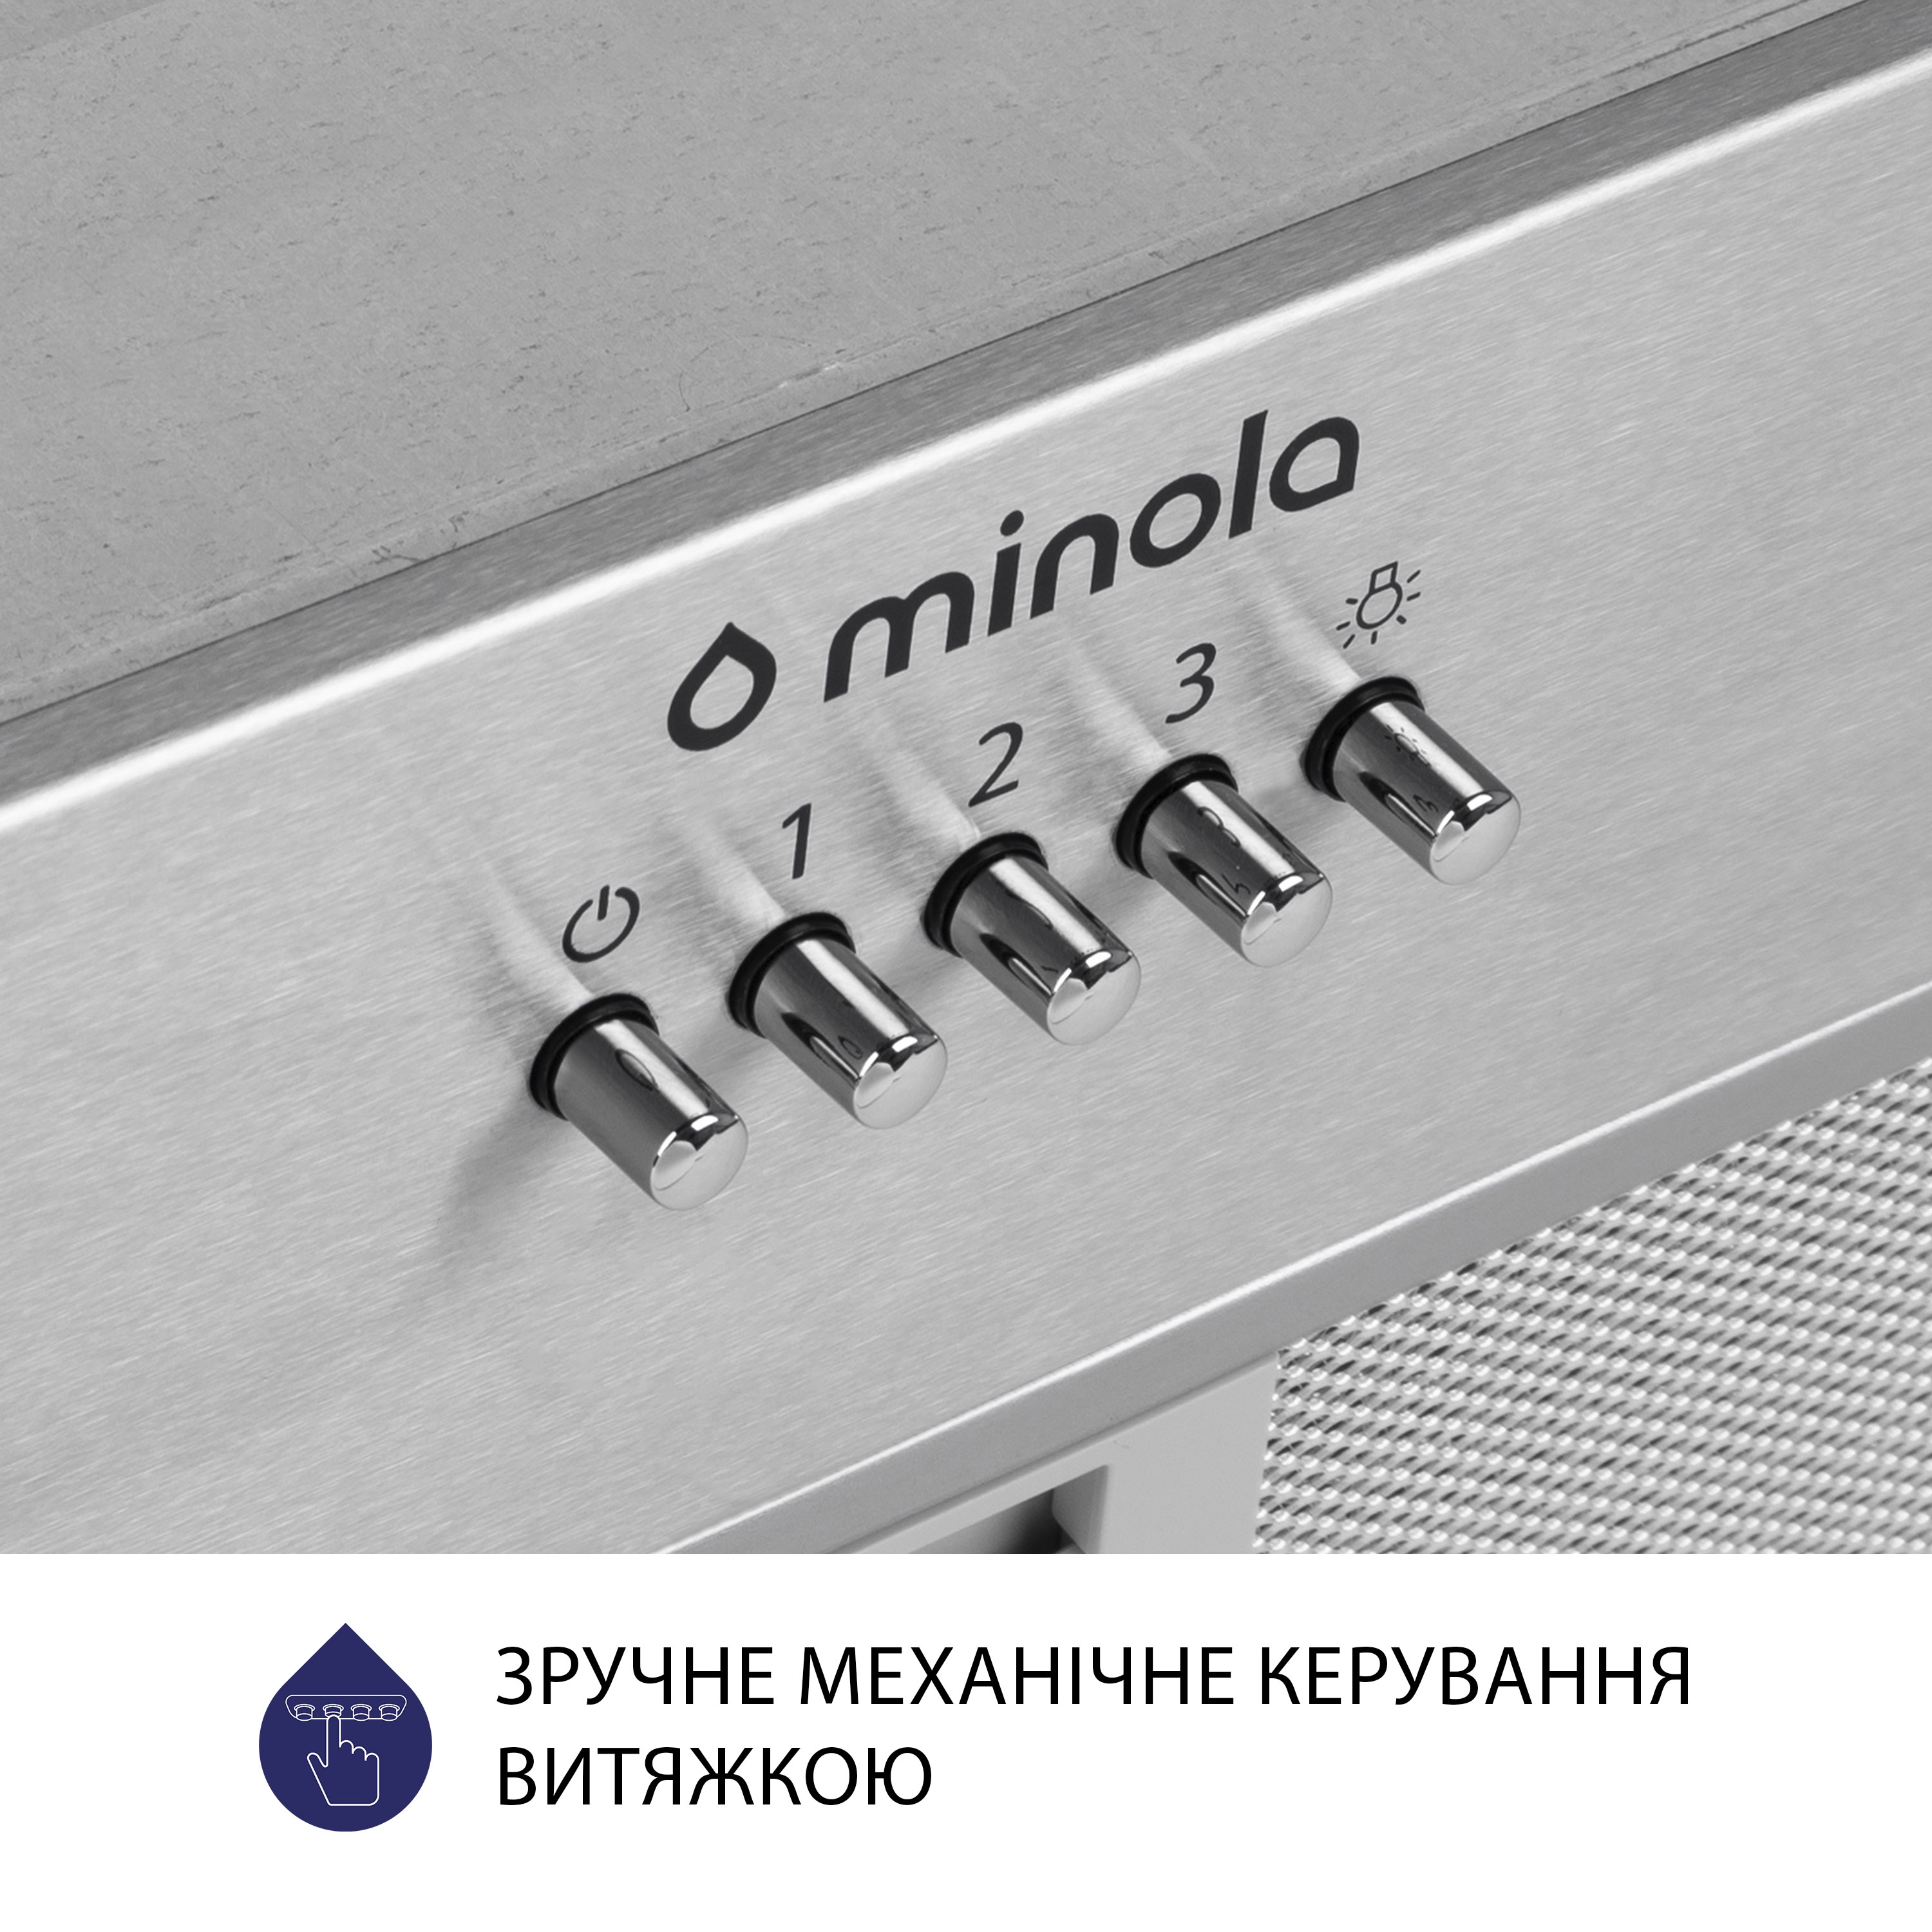 Витяжка кухонная полновстраиваемая Minola HBI 5204 I 700 LED инструкция - изображение 6